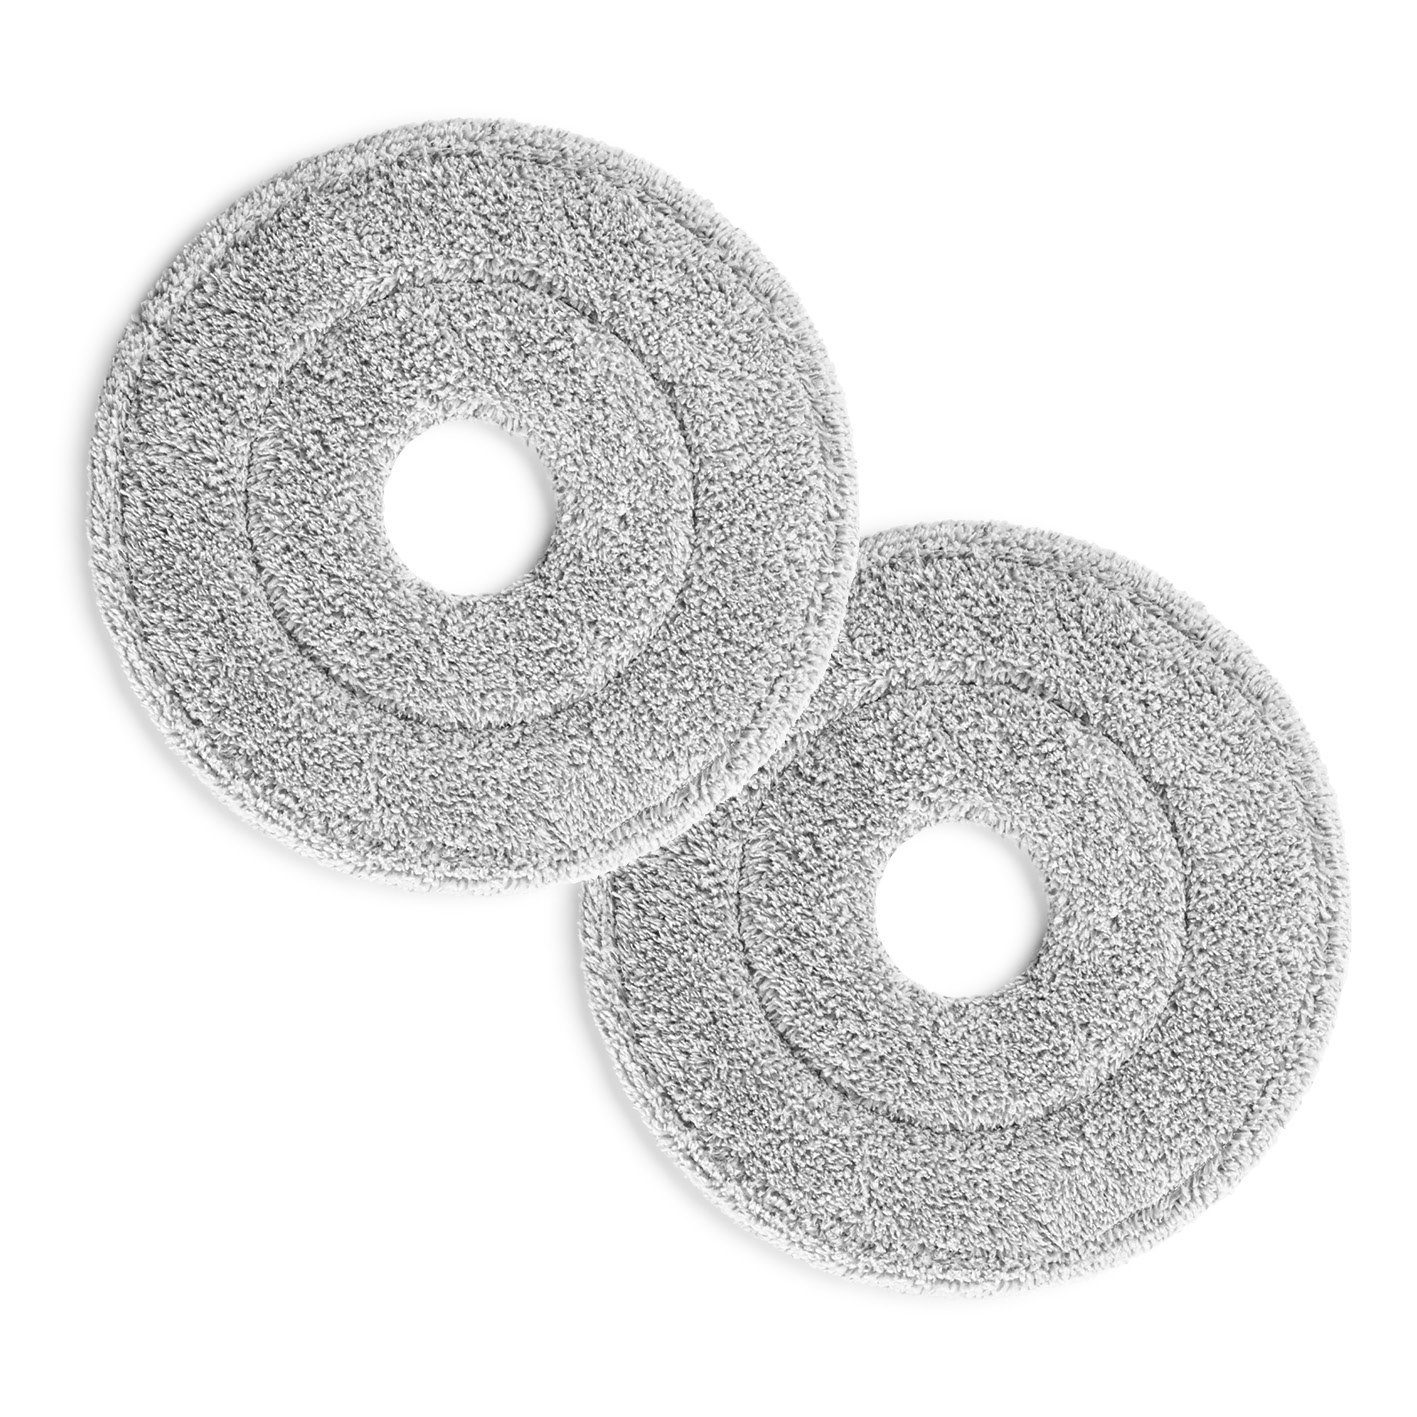 CLEANmaxx Ersatz-Wischtuch Spin-Mopp 24cm Durchmesser) grau/weiß (2-tlg., Reinigungstücher 2er-Set